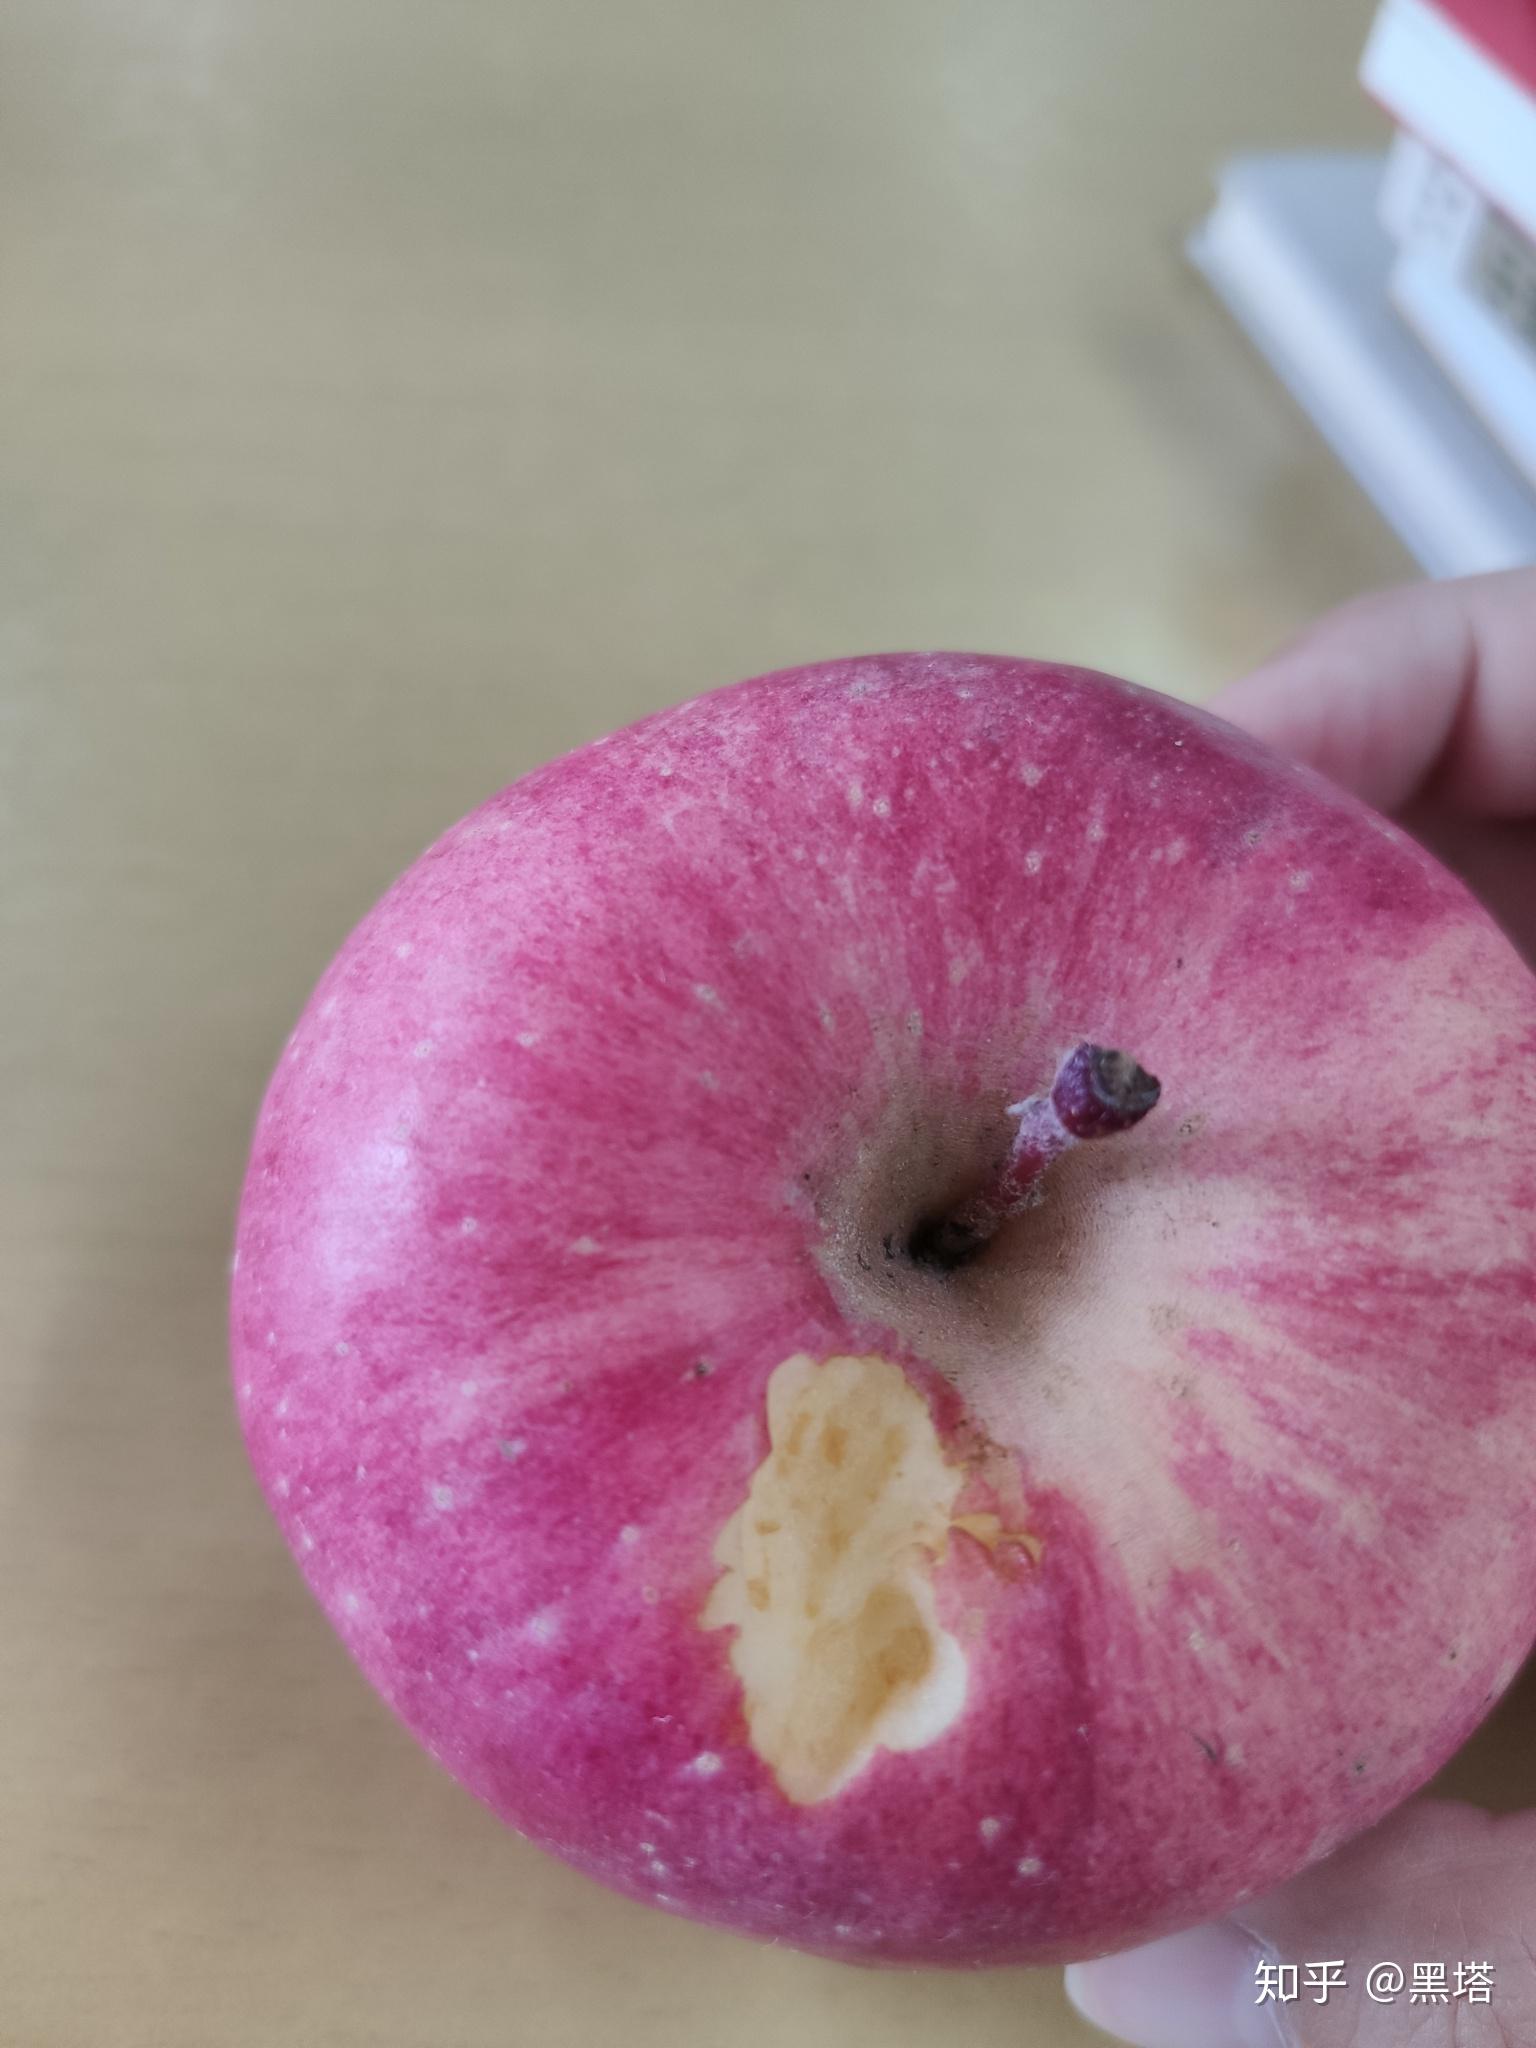 苹果上这个洞是被老鼠啃出来的吗